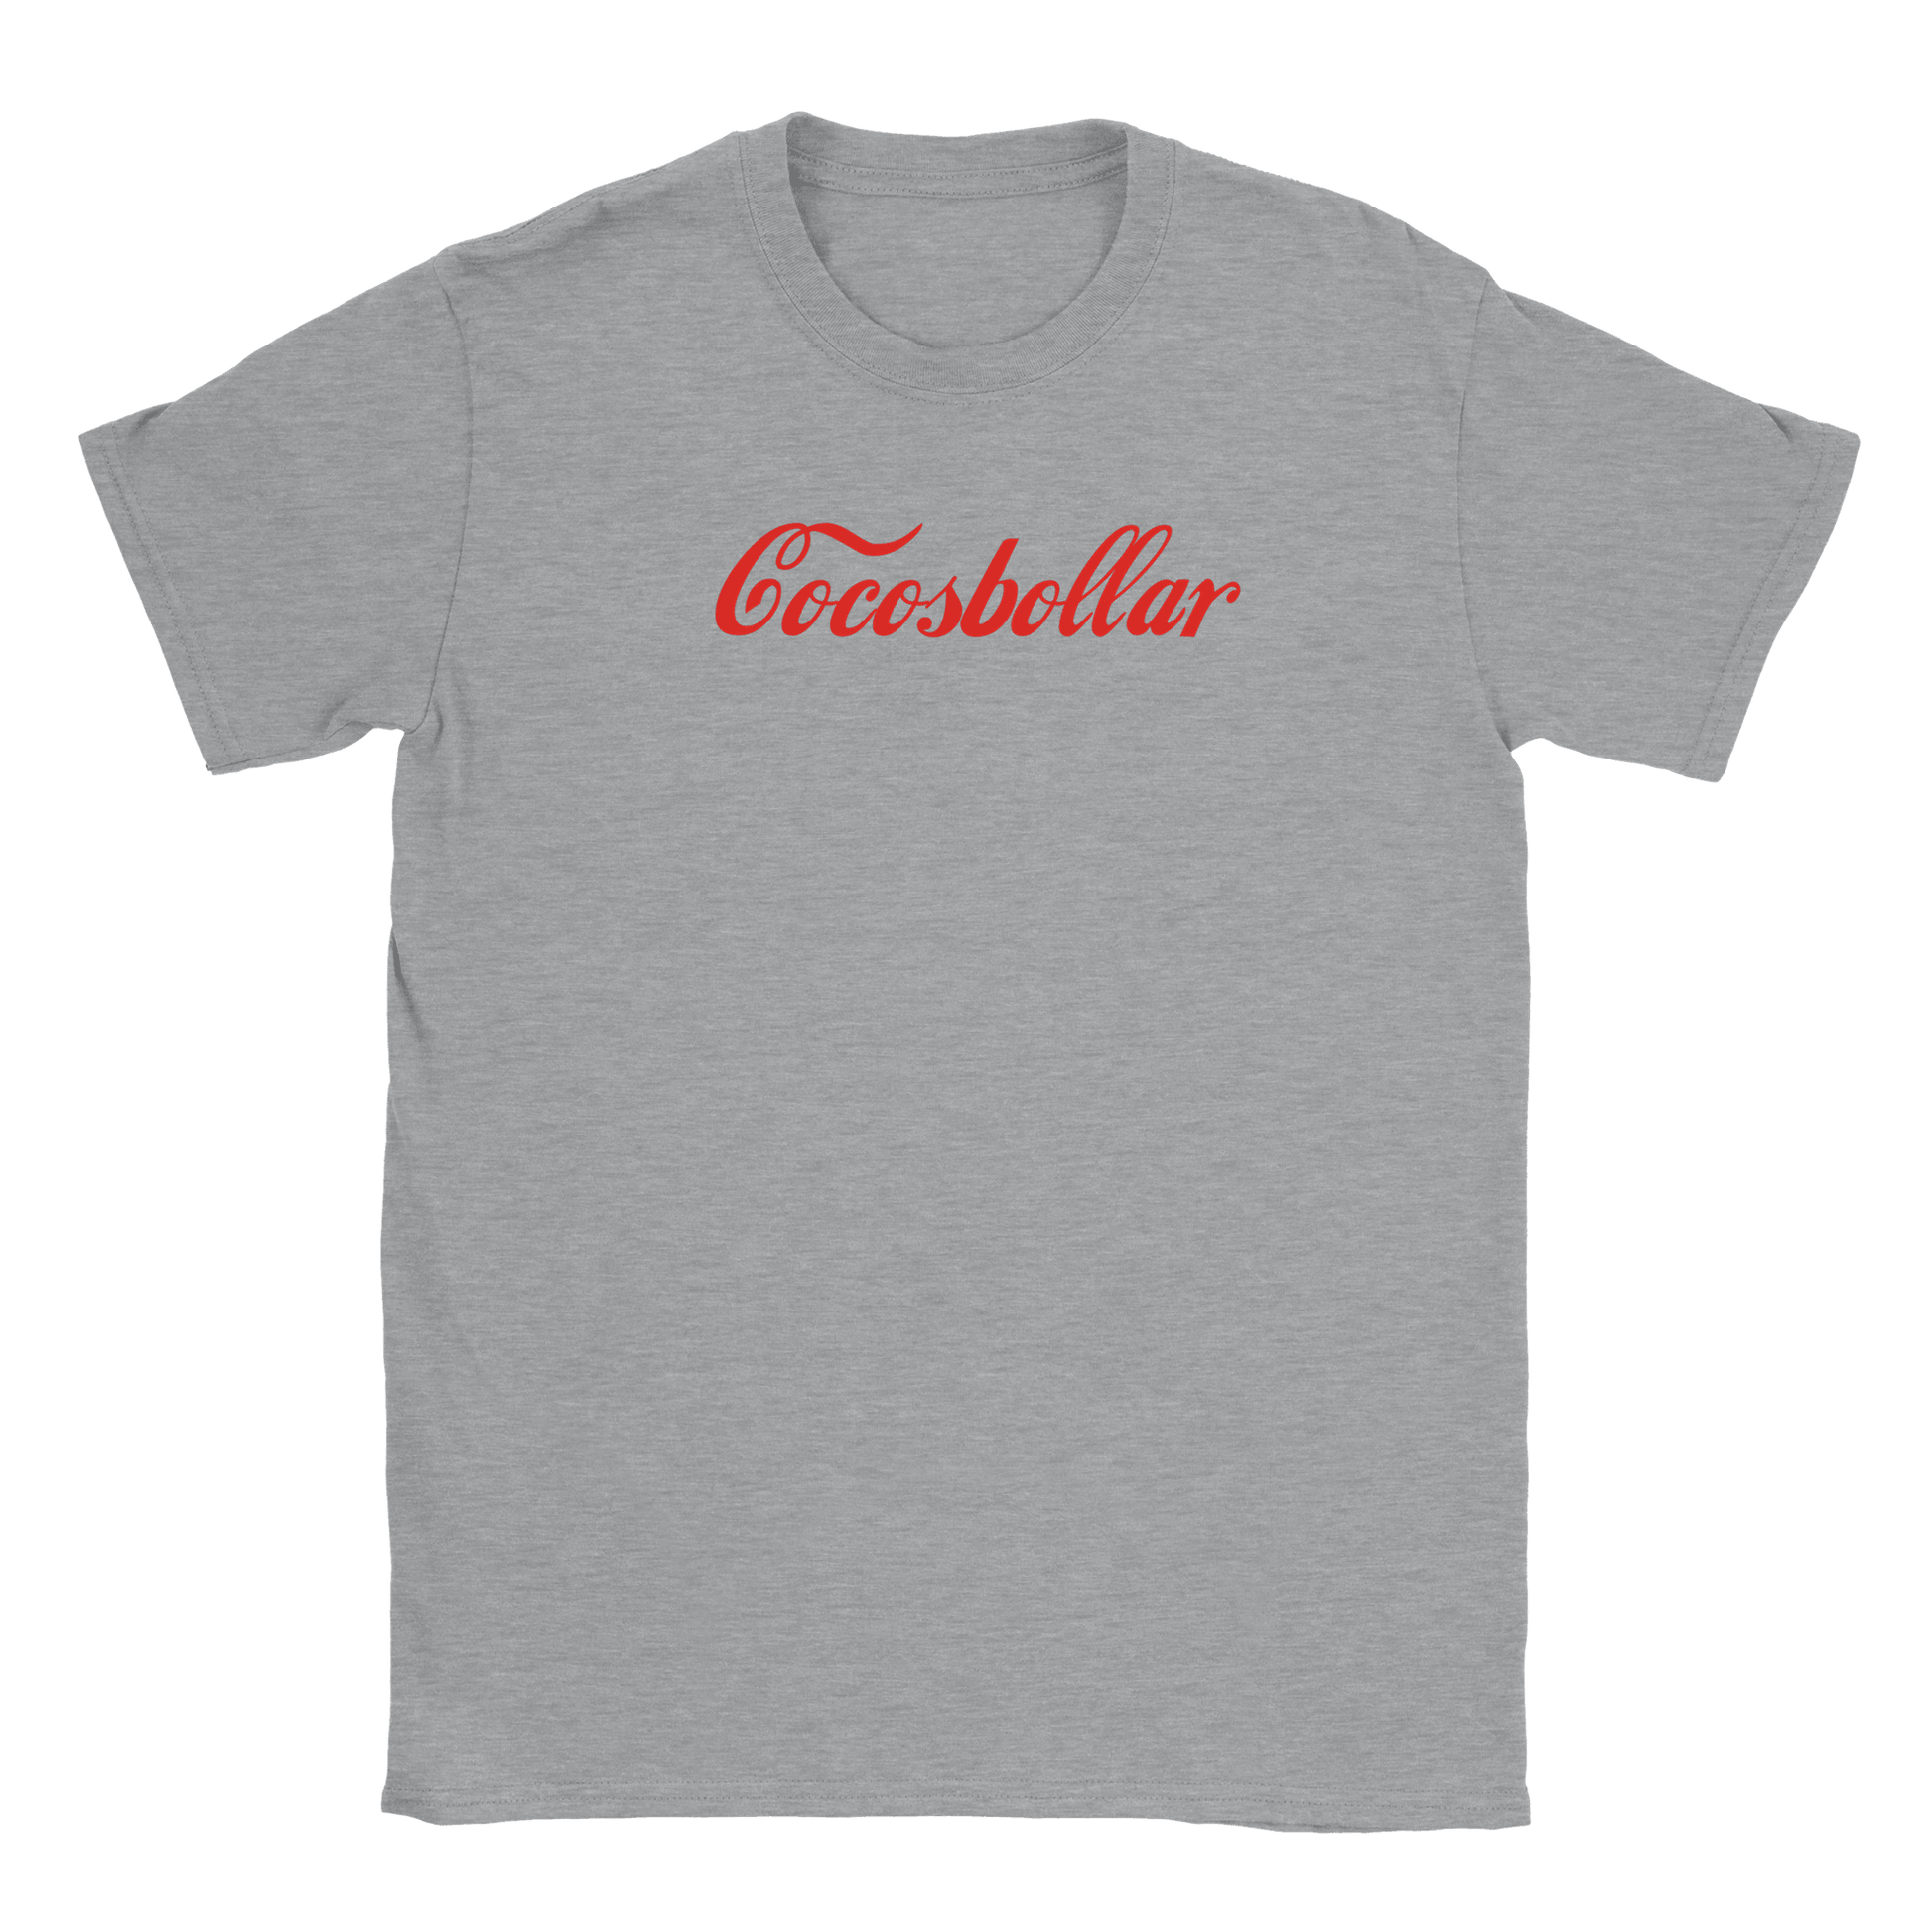 Cocosbollar - T-shirt Grå